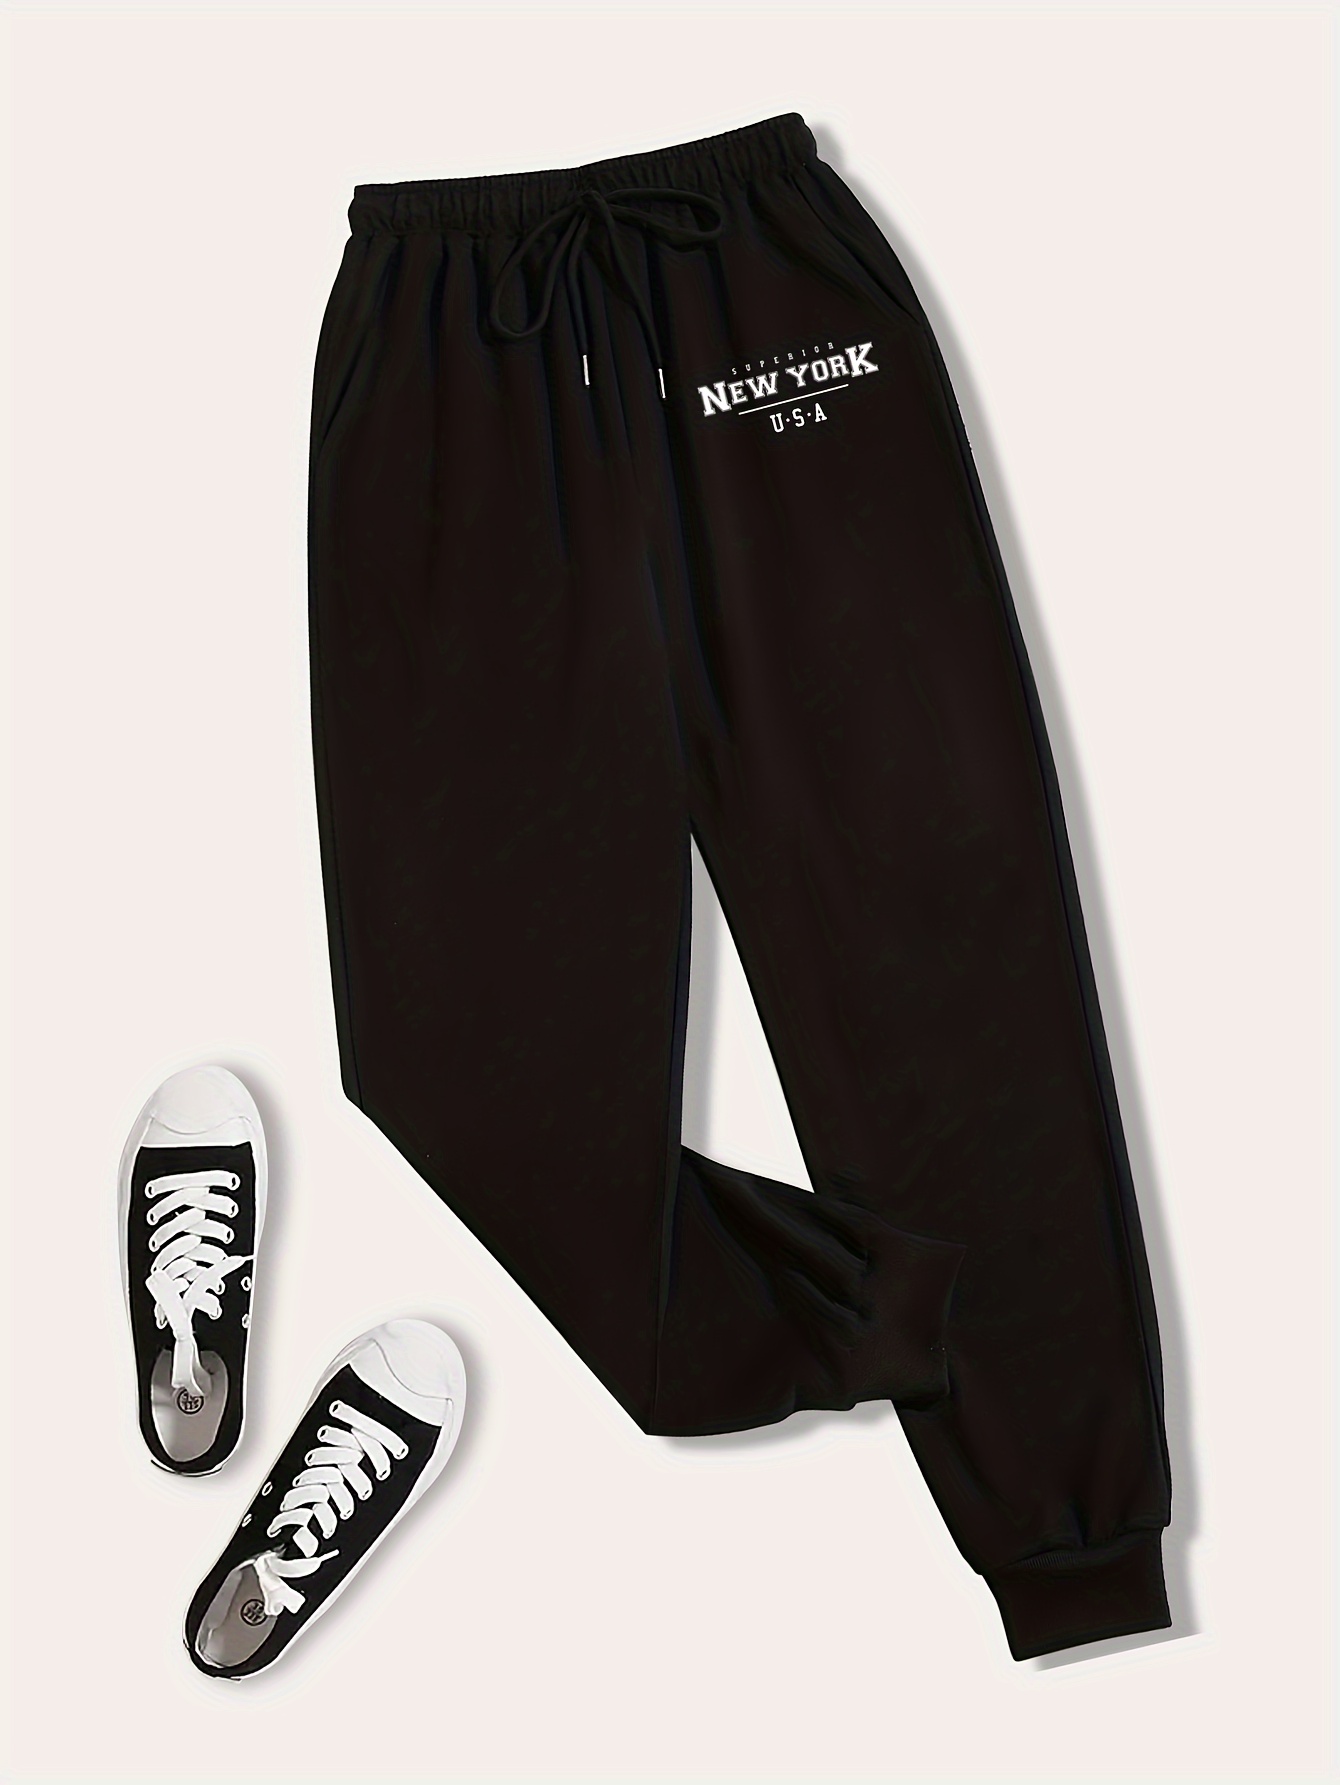 Loose Fit Printed Sweatpants - Black/New York City - Men